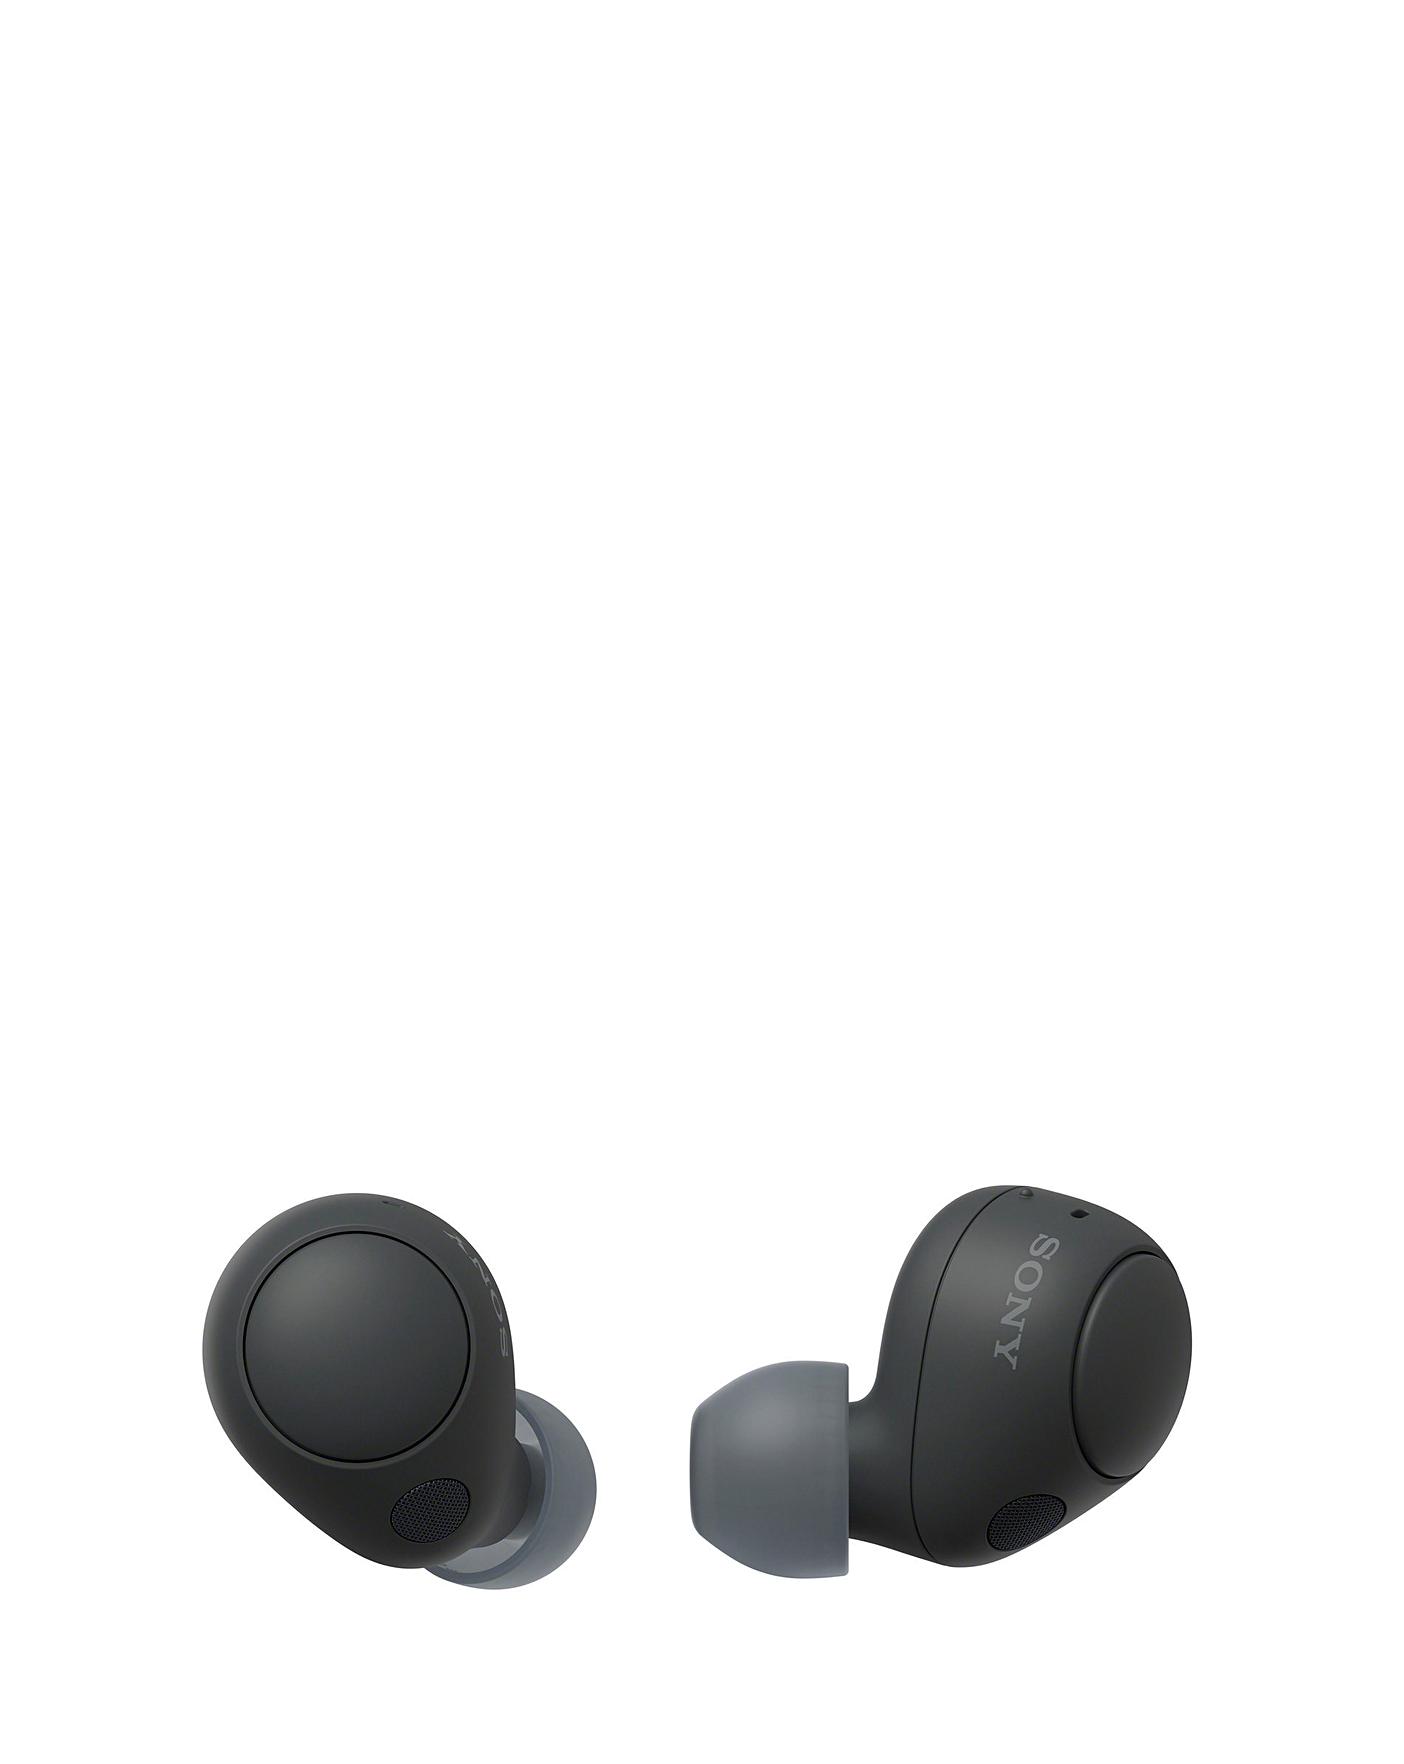 Sony WF-1000XM3 True Wireless Earphones Review